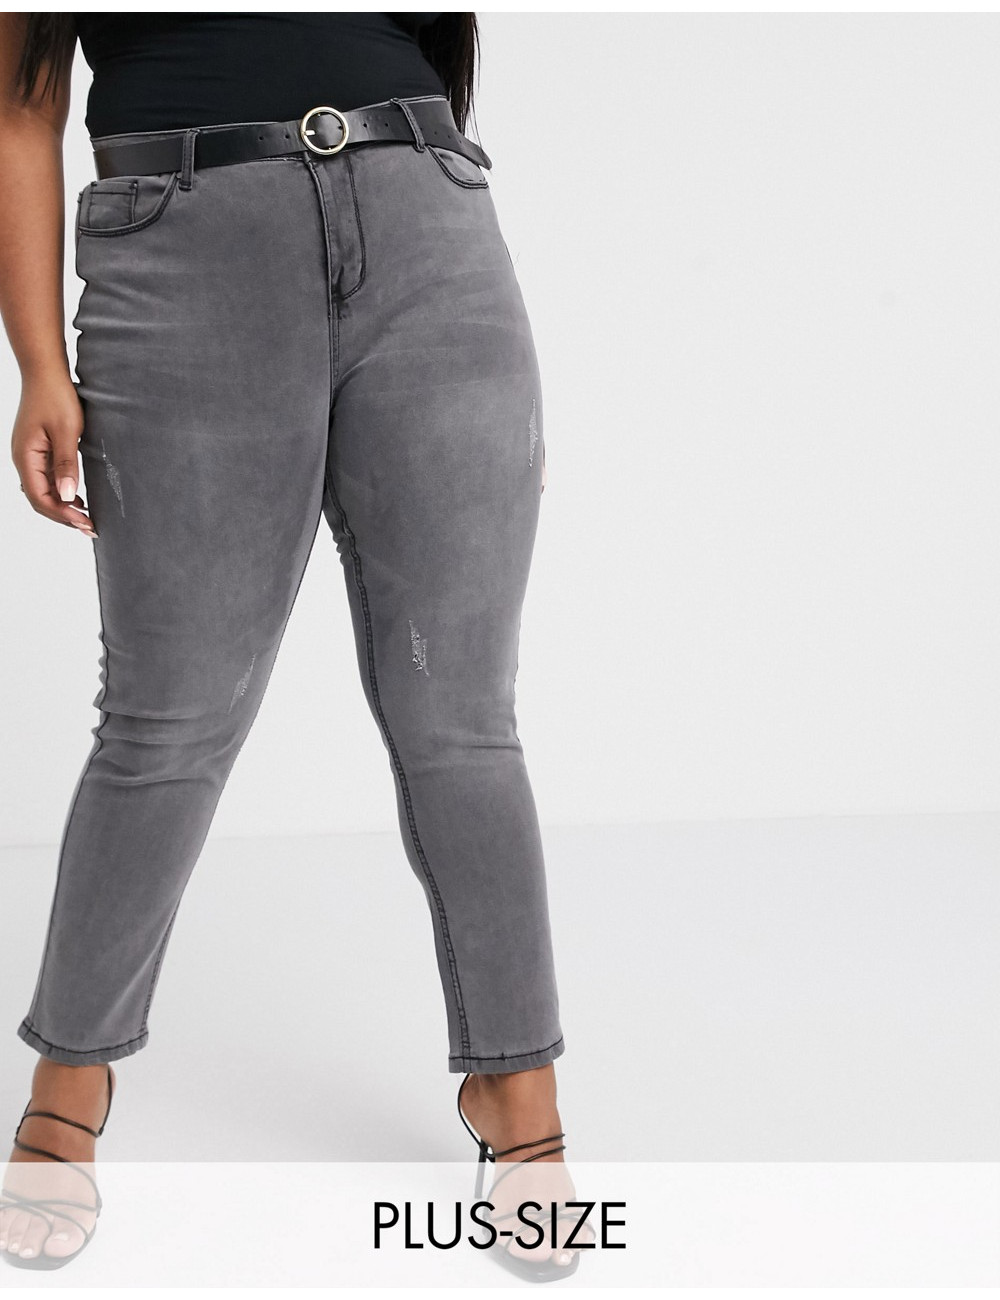 Koko skinny jeans in grey